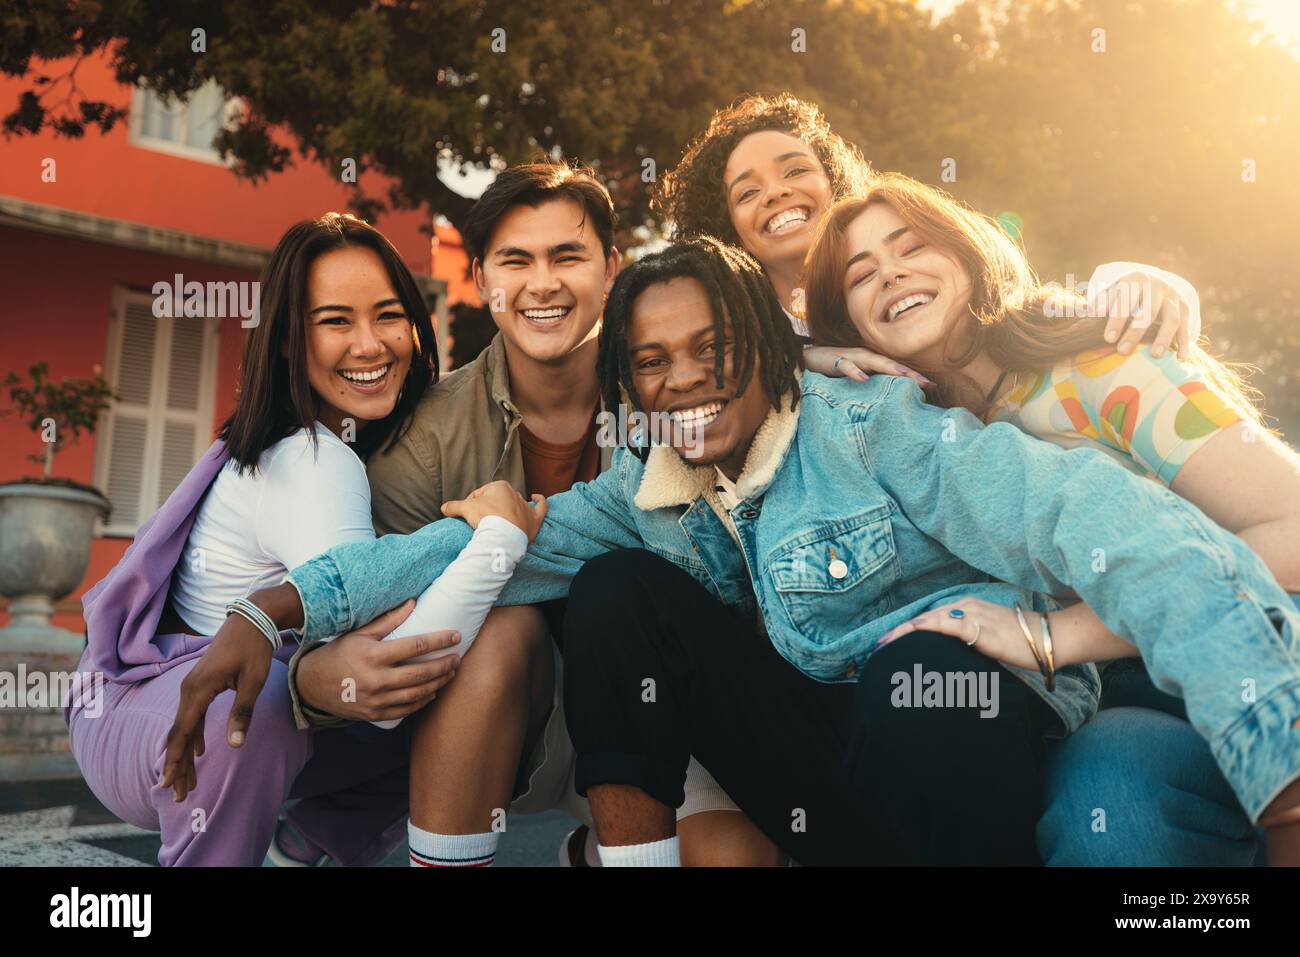 Gruppe glücklicher Freunde lächelt und verbindet sich, während sie an einem Auslandsprogramm im Freien teilnehmen. Stockfoto